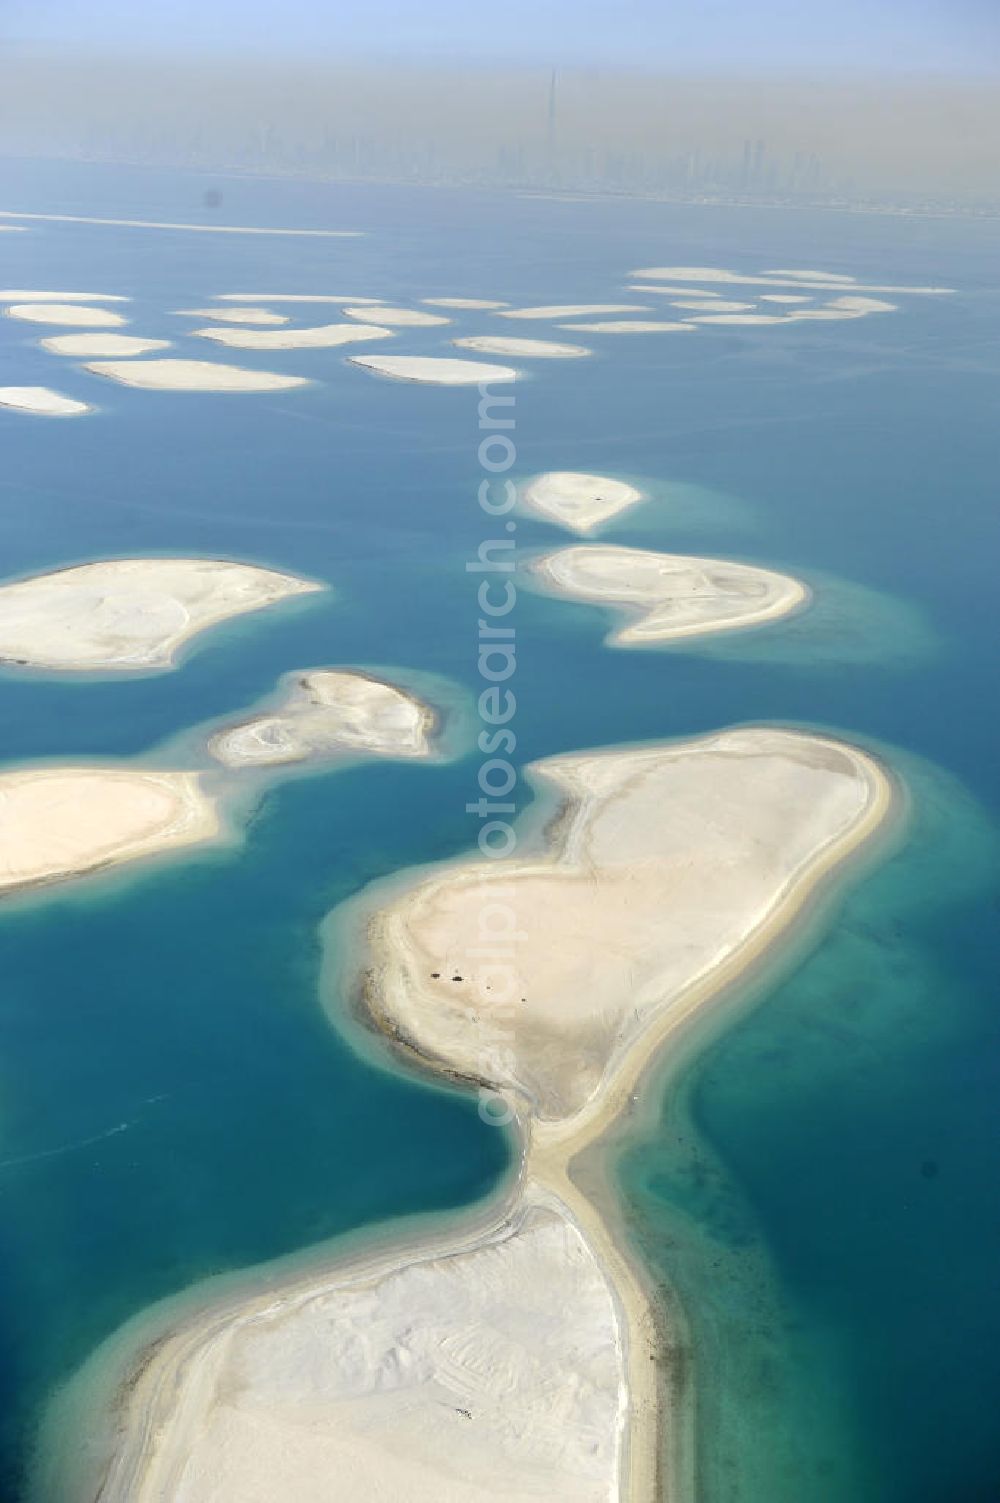 Dubai from above - Blick auf einen Teil der Inselgruppe The World. The World oder World Islands ist eine auf der Basis von Felsschüttungen aus verdichtetem Sand aufgespülte künstliche Inselgruppe, die die groben Umrisse der Weltkarte darstellen sollen. Sie befindet sich 4,0 km (2,5 Meilen) vor der Küste Dubais, Vereinigte Arabische Emirate und besteht aus mehreren verscheidenen kleineren Inseln. View of a part of the archipelago The World. The World or World Islands is an artificial archipelago of various small islands constructed in the rough shape of a world map, located 4,0 km (2.5 mi) off the coast of Dubai, United Arab Emirates.